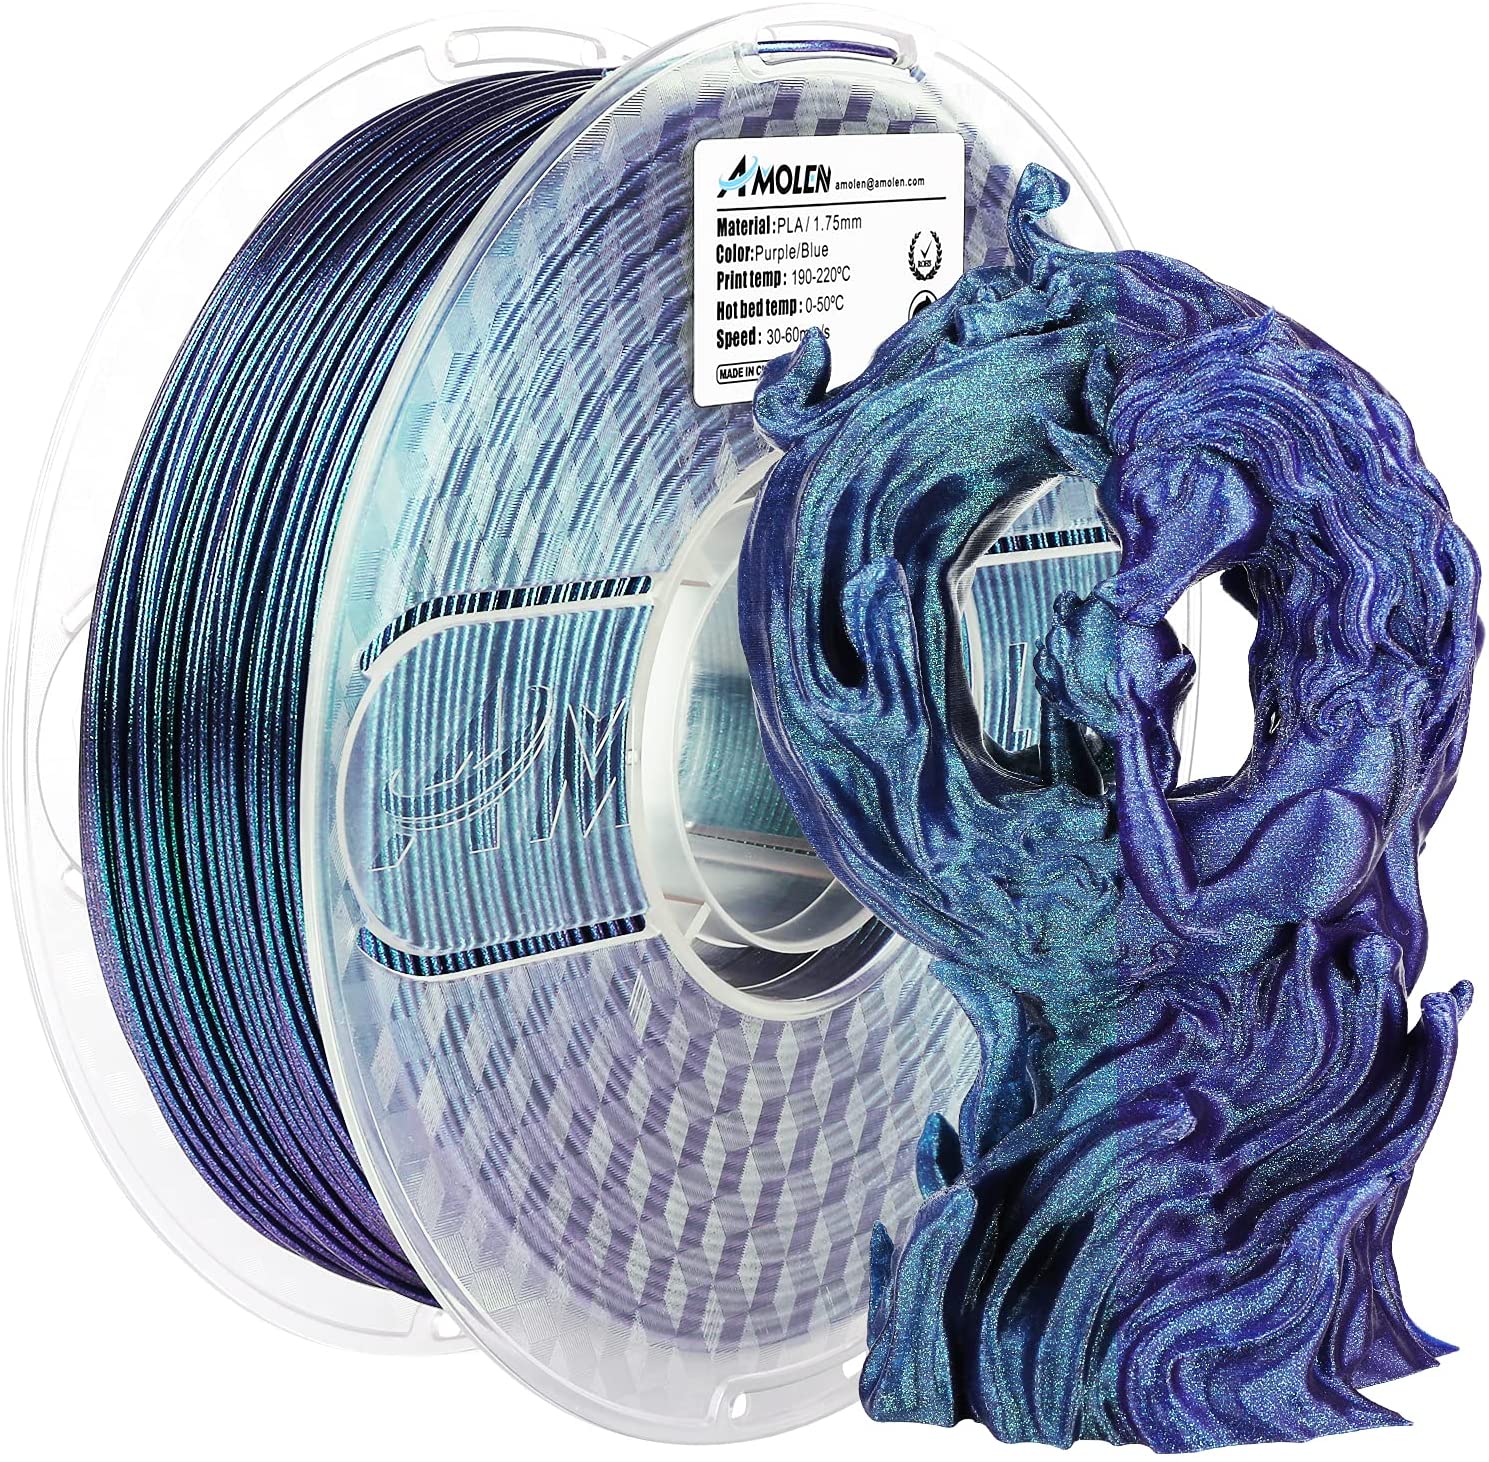 shiny pla filament、3d printer filament、3d printing filament、shiny purple blue